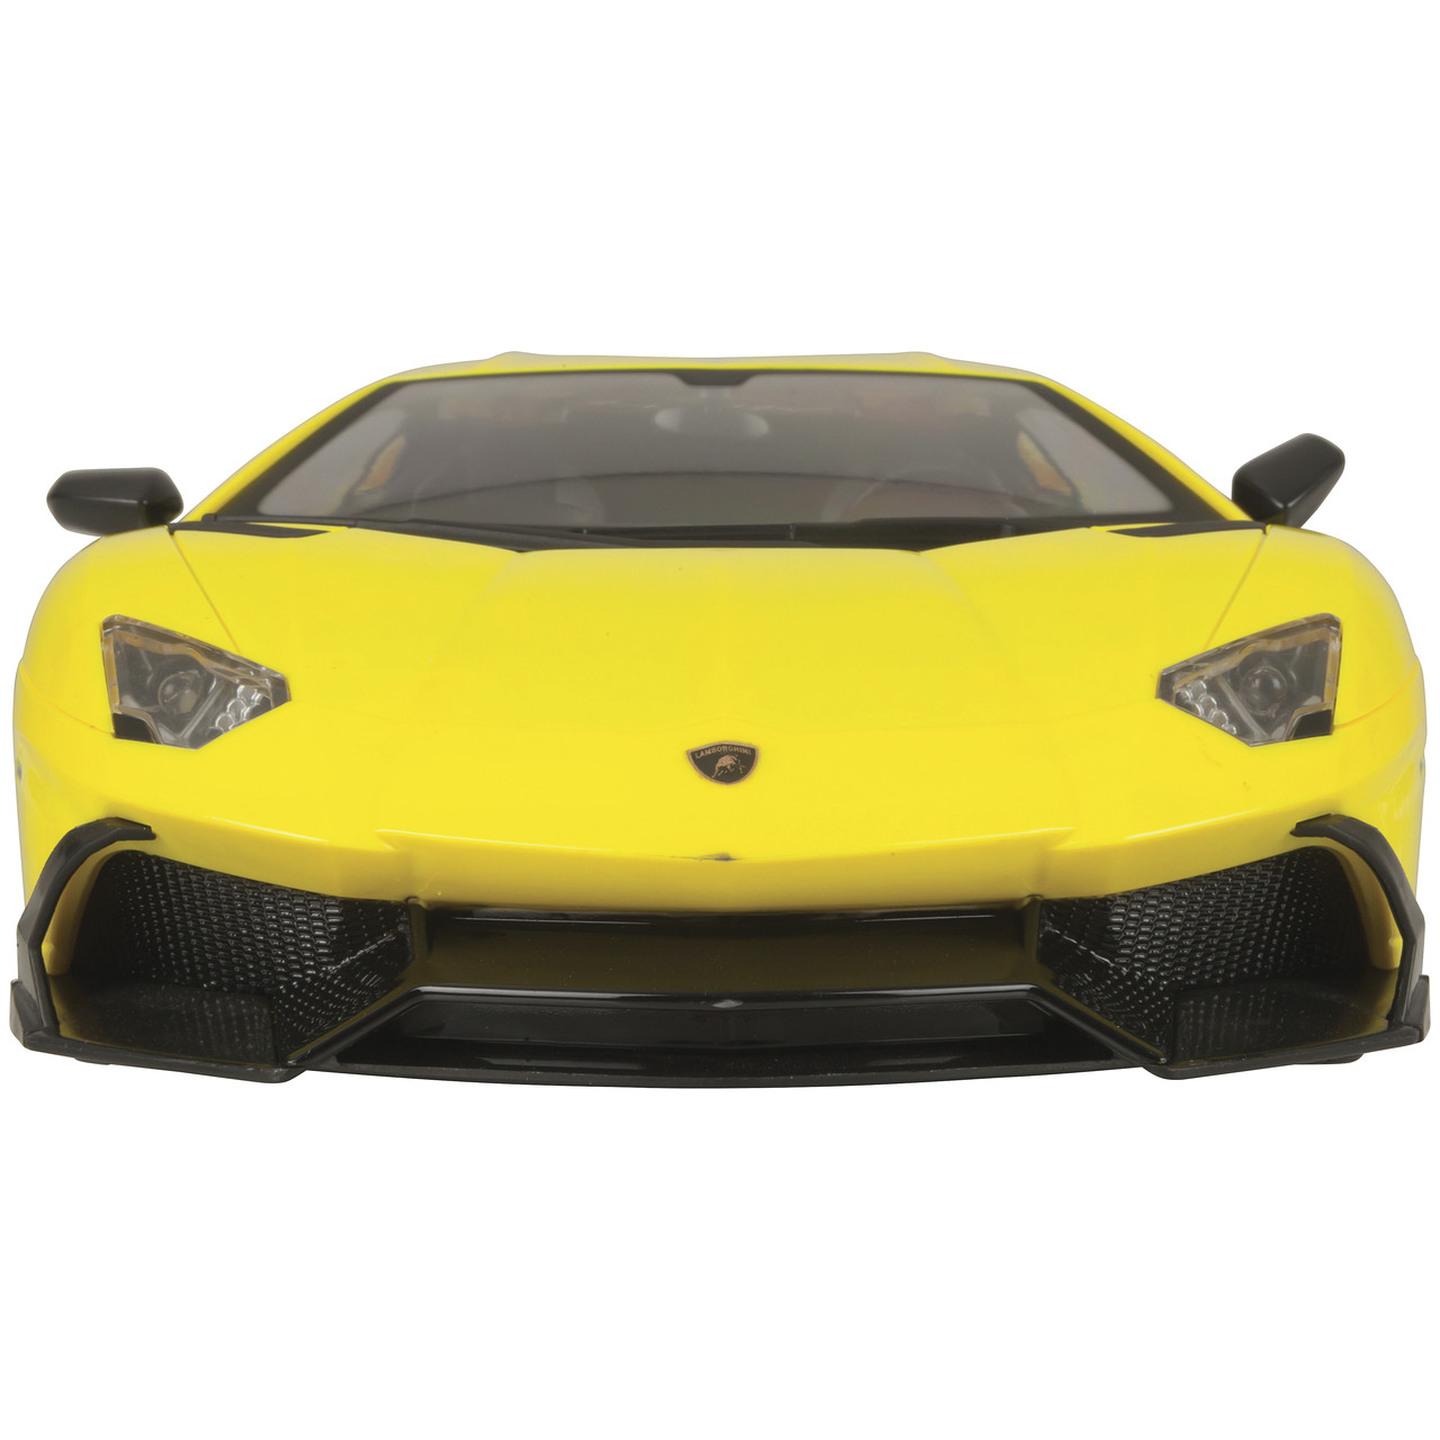  1:12 R/C Lamborghini